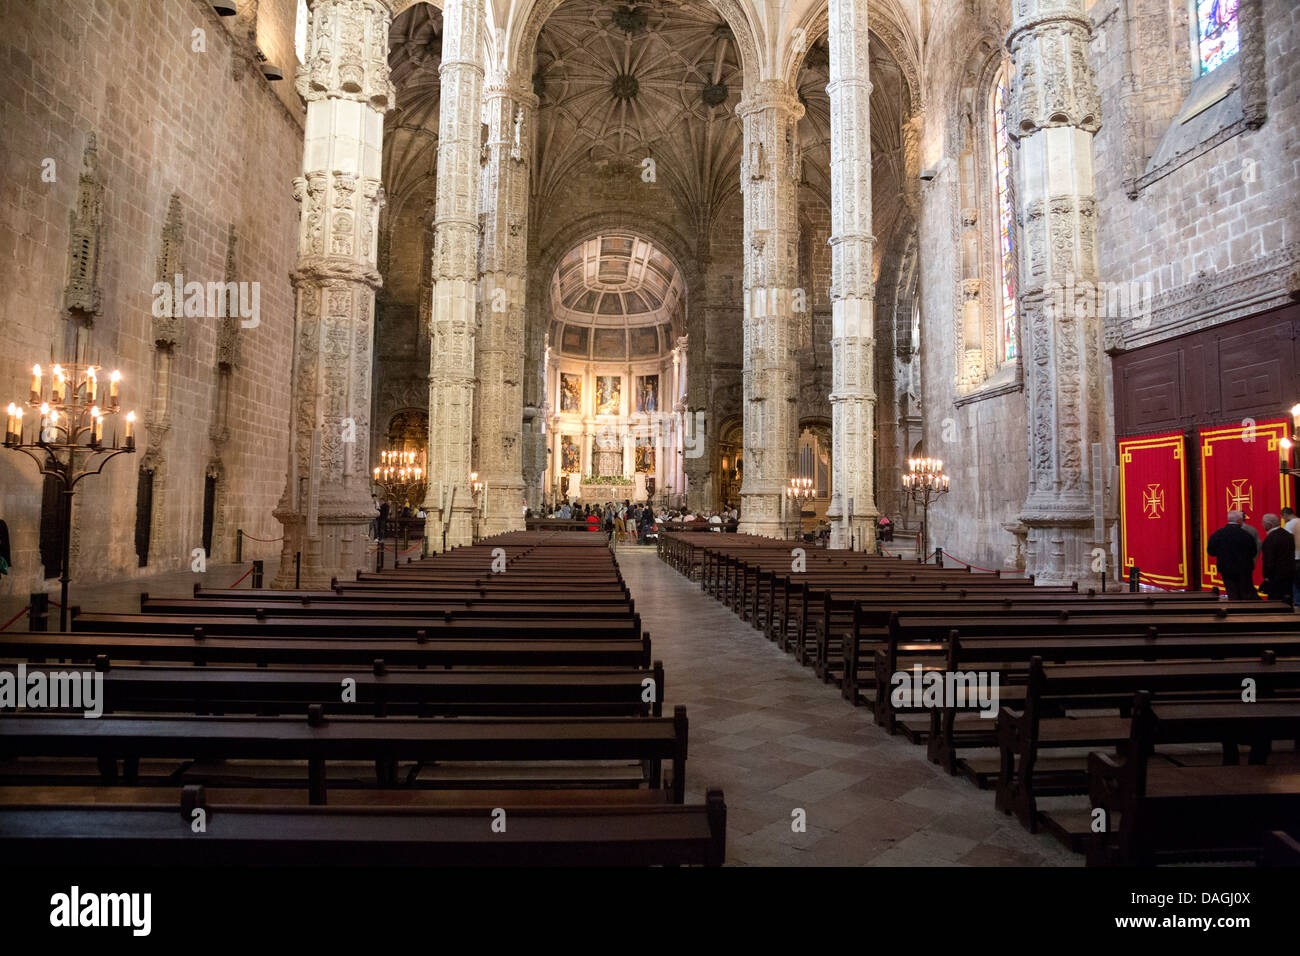 Chiesa di Santa Maria de Belem nel monastero di Hieronymites, Sito Patrimonio Mondiale dell'UNESCO, stile manuelino Foto Stock